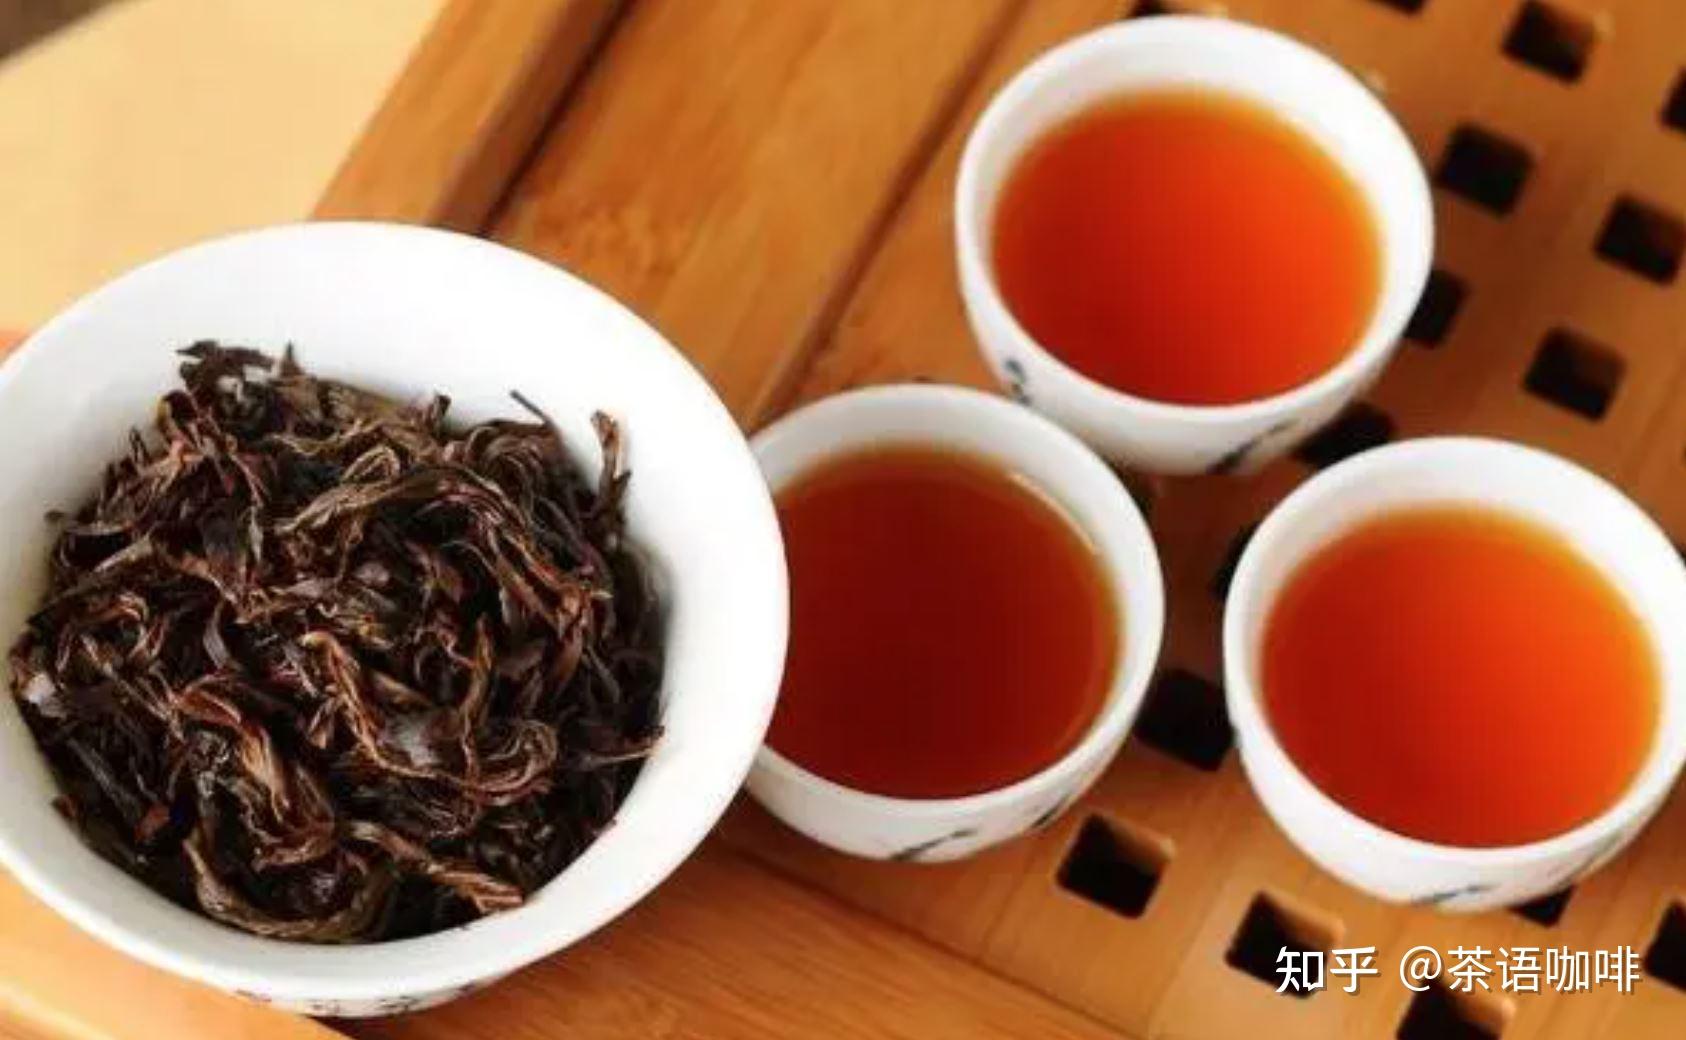 这其实是因为红茶中的茶多酚在发酵过程中被氧化,形成了茶红素等化合